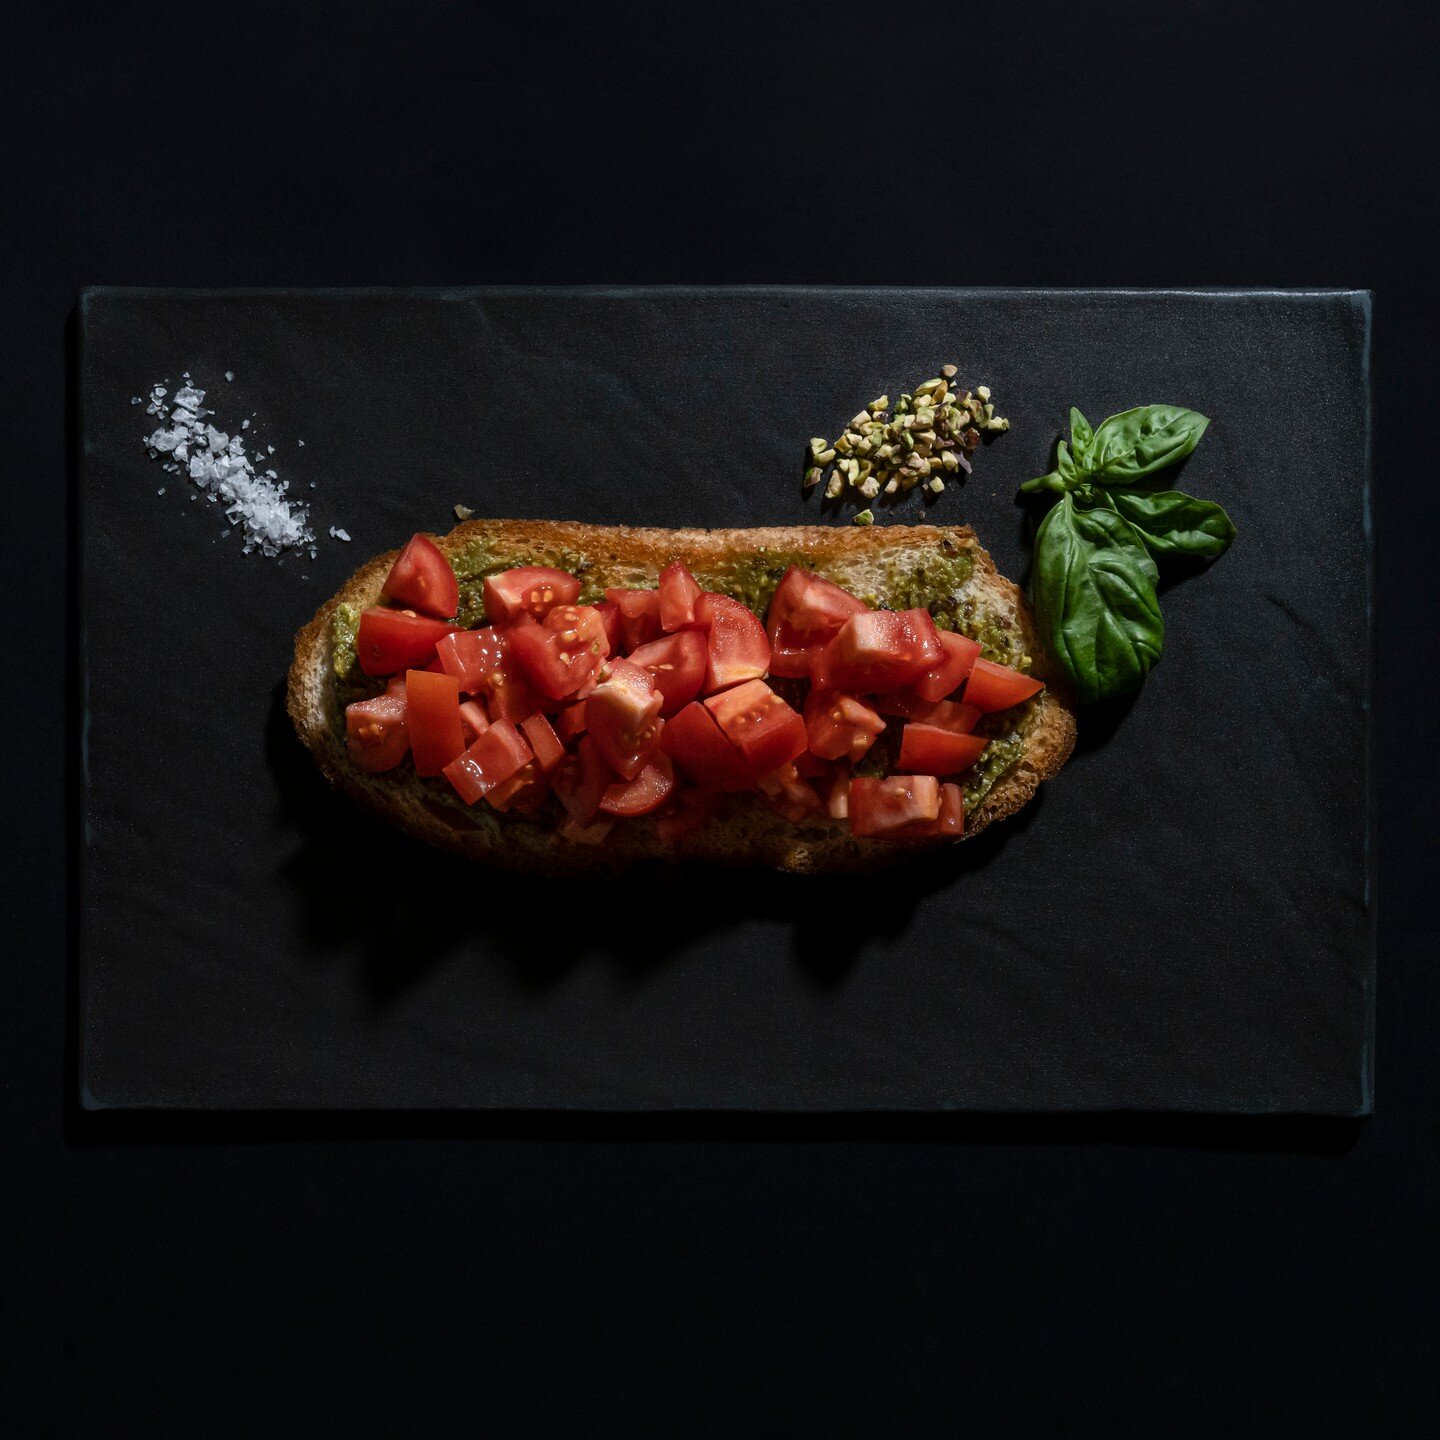 La nostra bruschetta con pesto di pistacchi di Bronte e Pomodorini spadellati al basilico.

#food#comofood#italianfood#instafood#italy#como#comolake